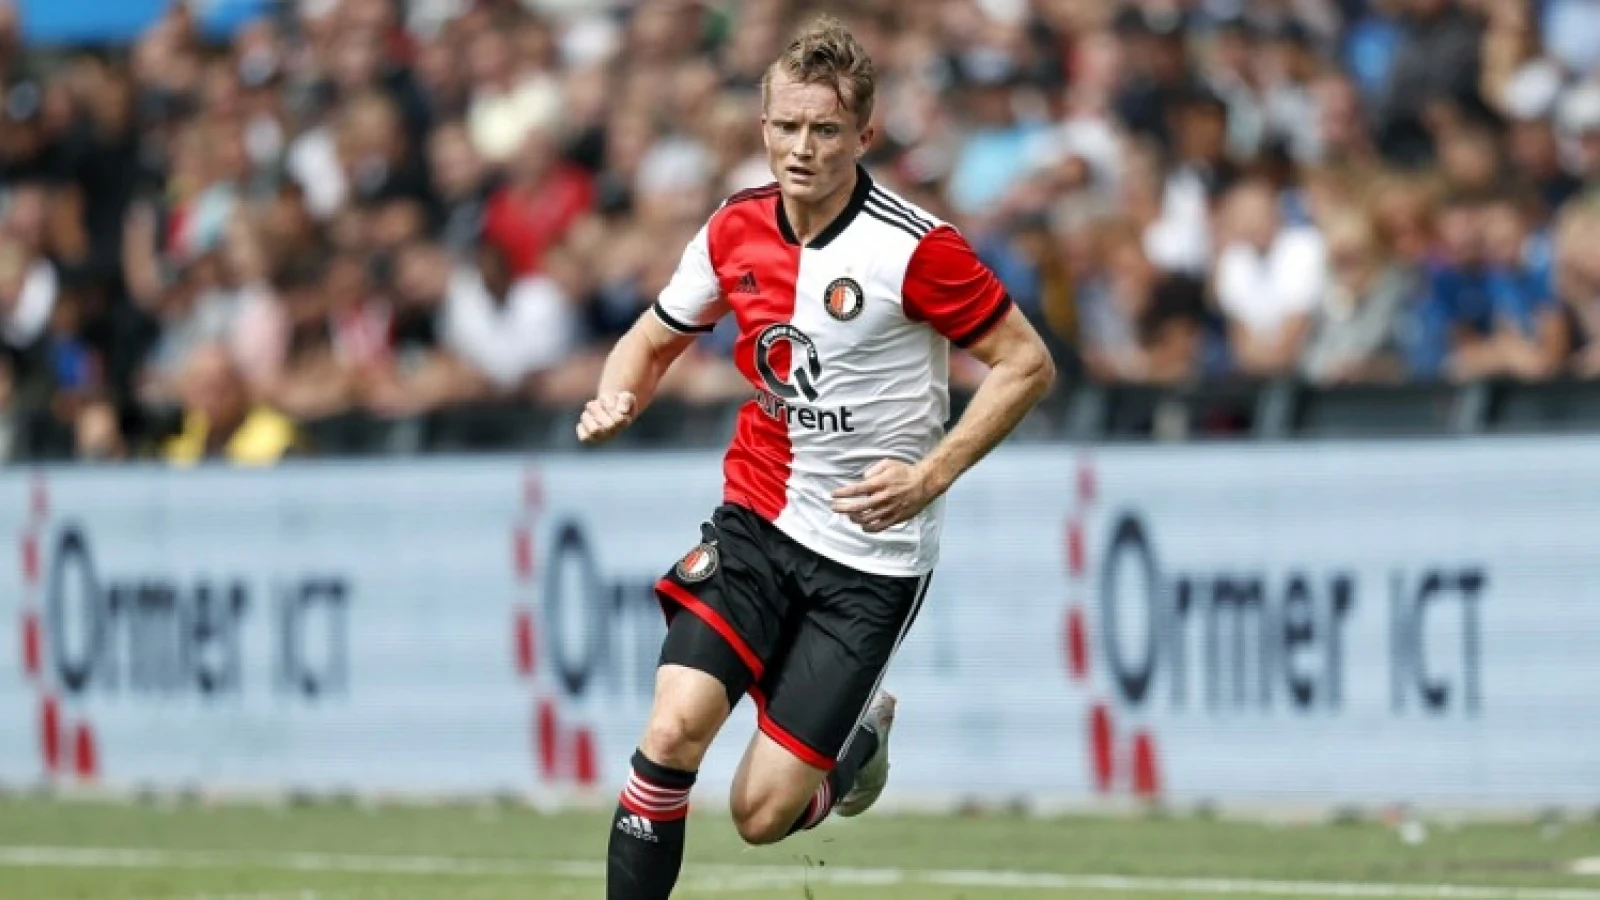 Larsson slachtoffer van slechte uitvoering 4-3-3 formatie: 'Hij past beter bij Ajax'